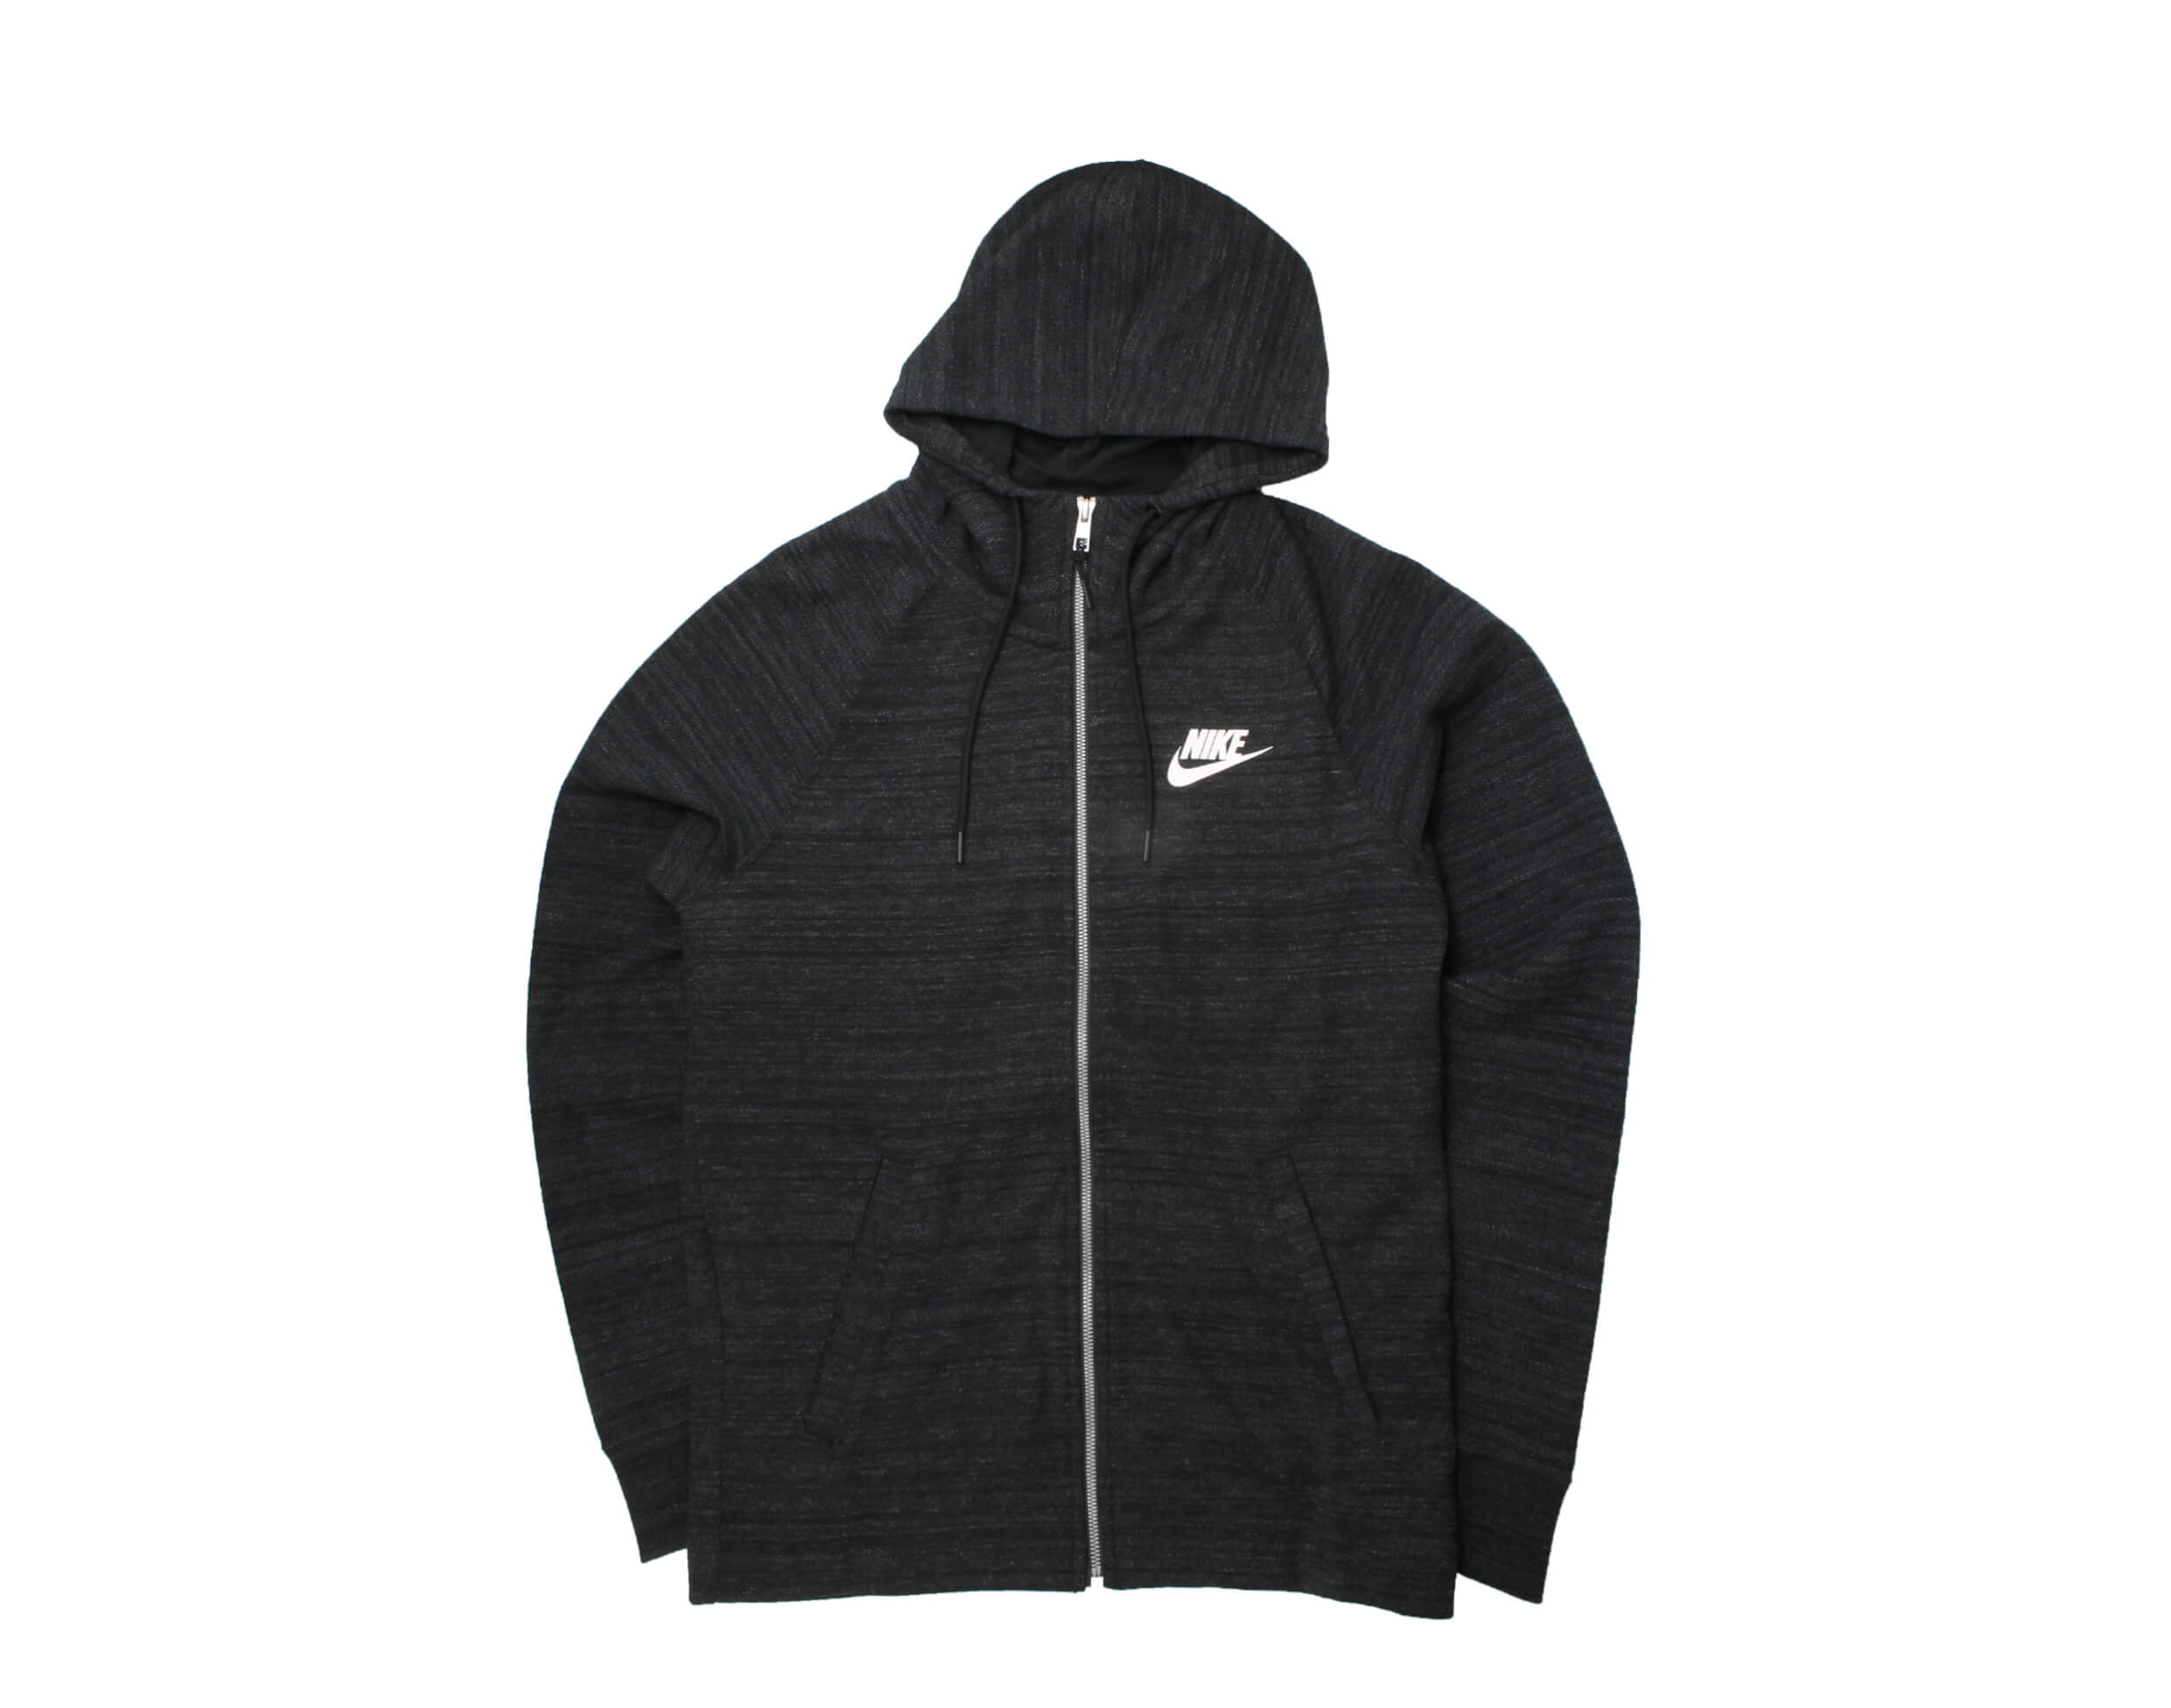 Nike Sportswear AV15 Full-Zip Knit Hoodie Small - Walmart.com